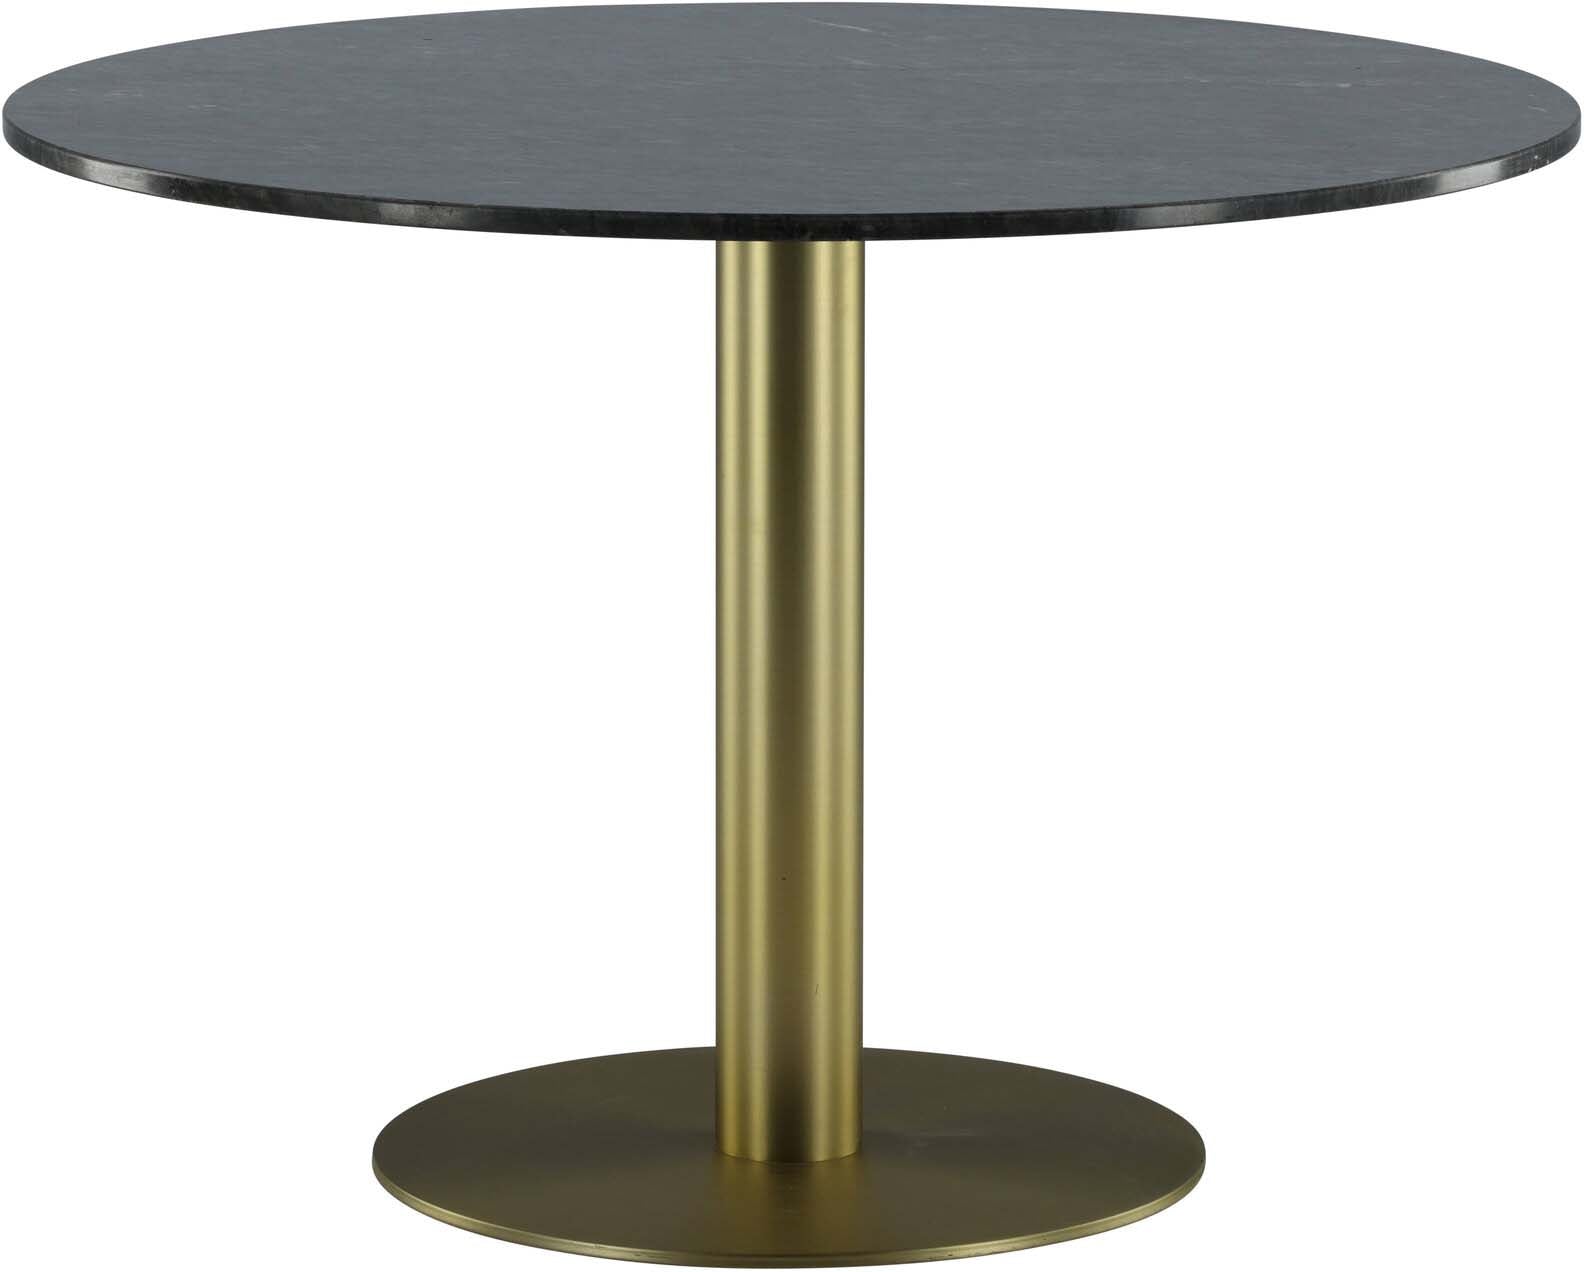 Estelle Tisch in Grau / Schwarz / Gold präsentiert im Onlineshop von KAQTU Design AG. Esstisch ist von Venture Home